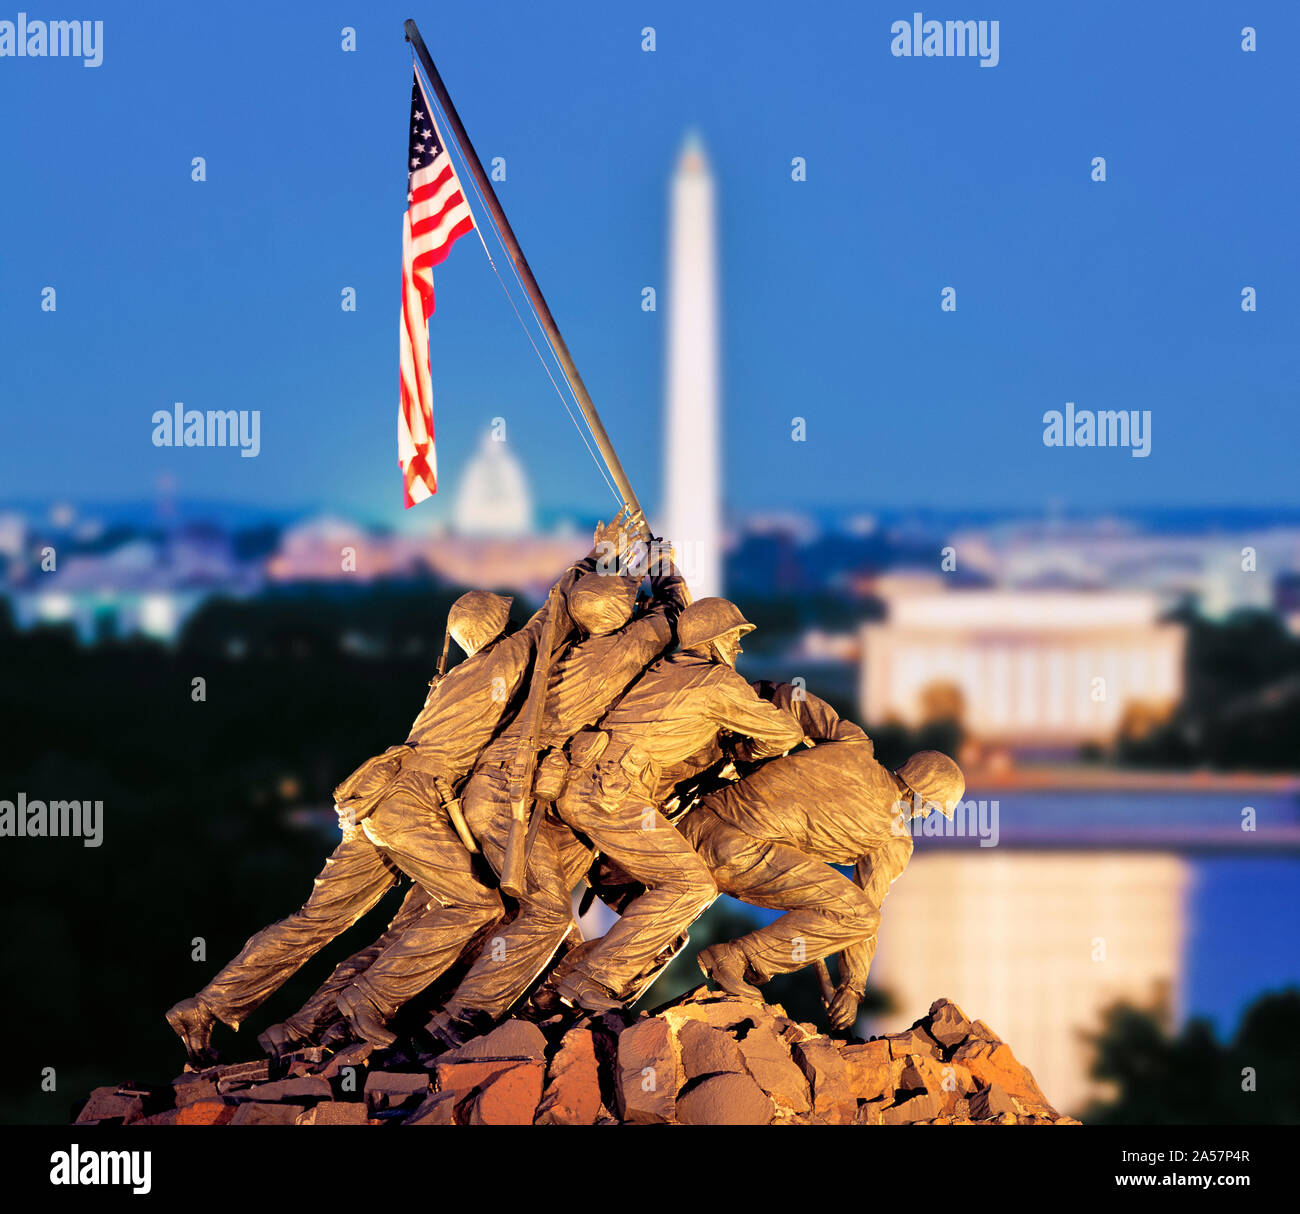 Compuesta Digital, el Memorial Iwo Jima con el Monumento a Washington, en el fondo, el Cementerio Nacional de Arlington, Arlington, Virginia, EE.UU. Foto de stock